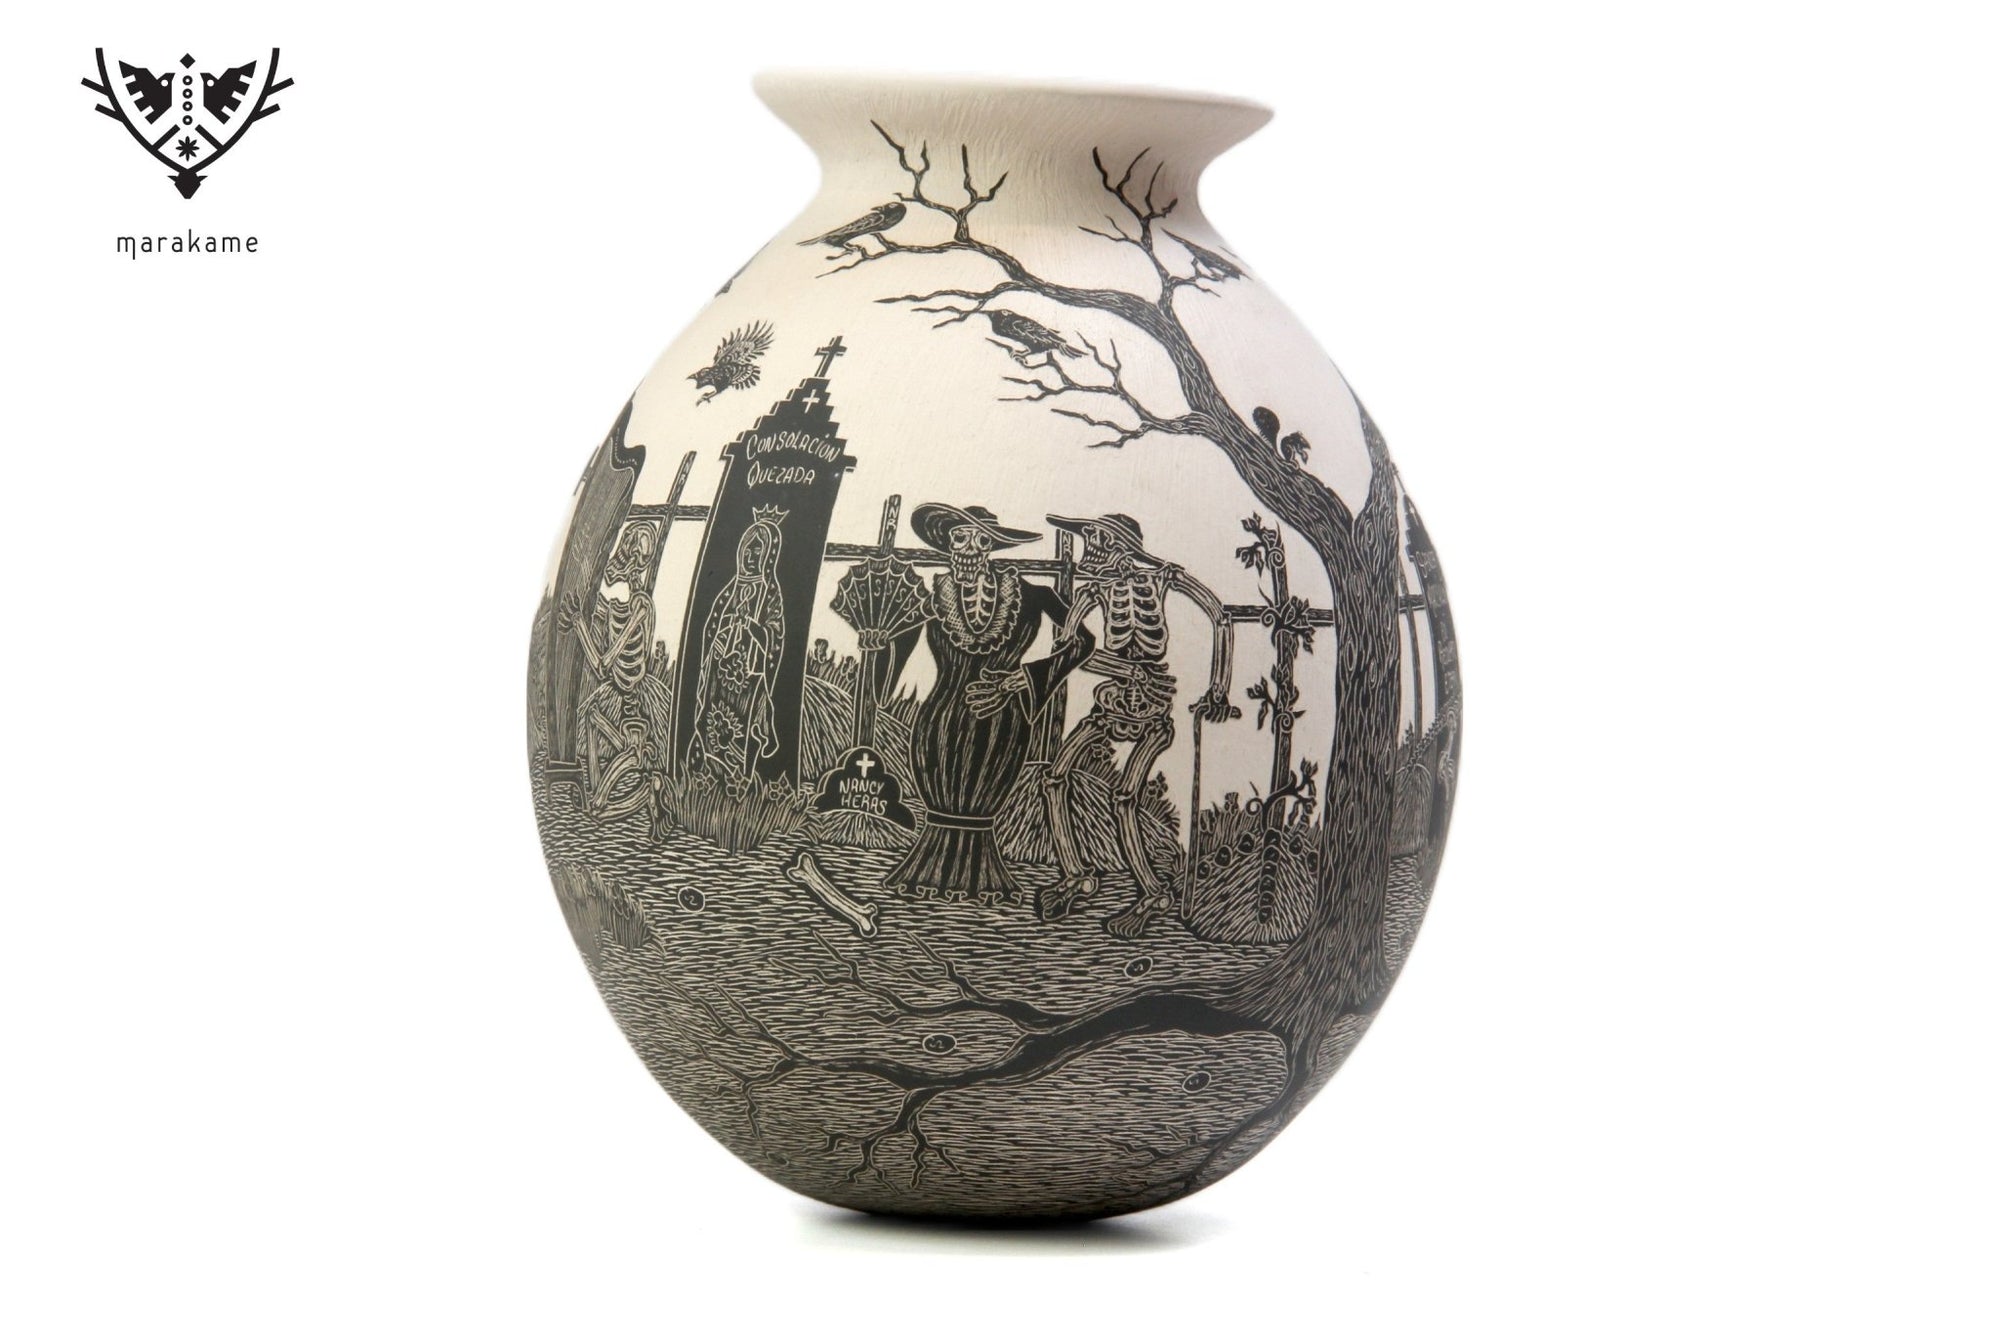 Ceramica Mata Ortiz - Notte dei morti, corvi che volano di giorno - Arte Huichol - Marakame